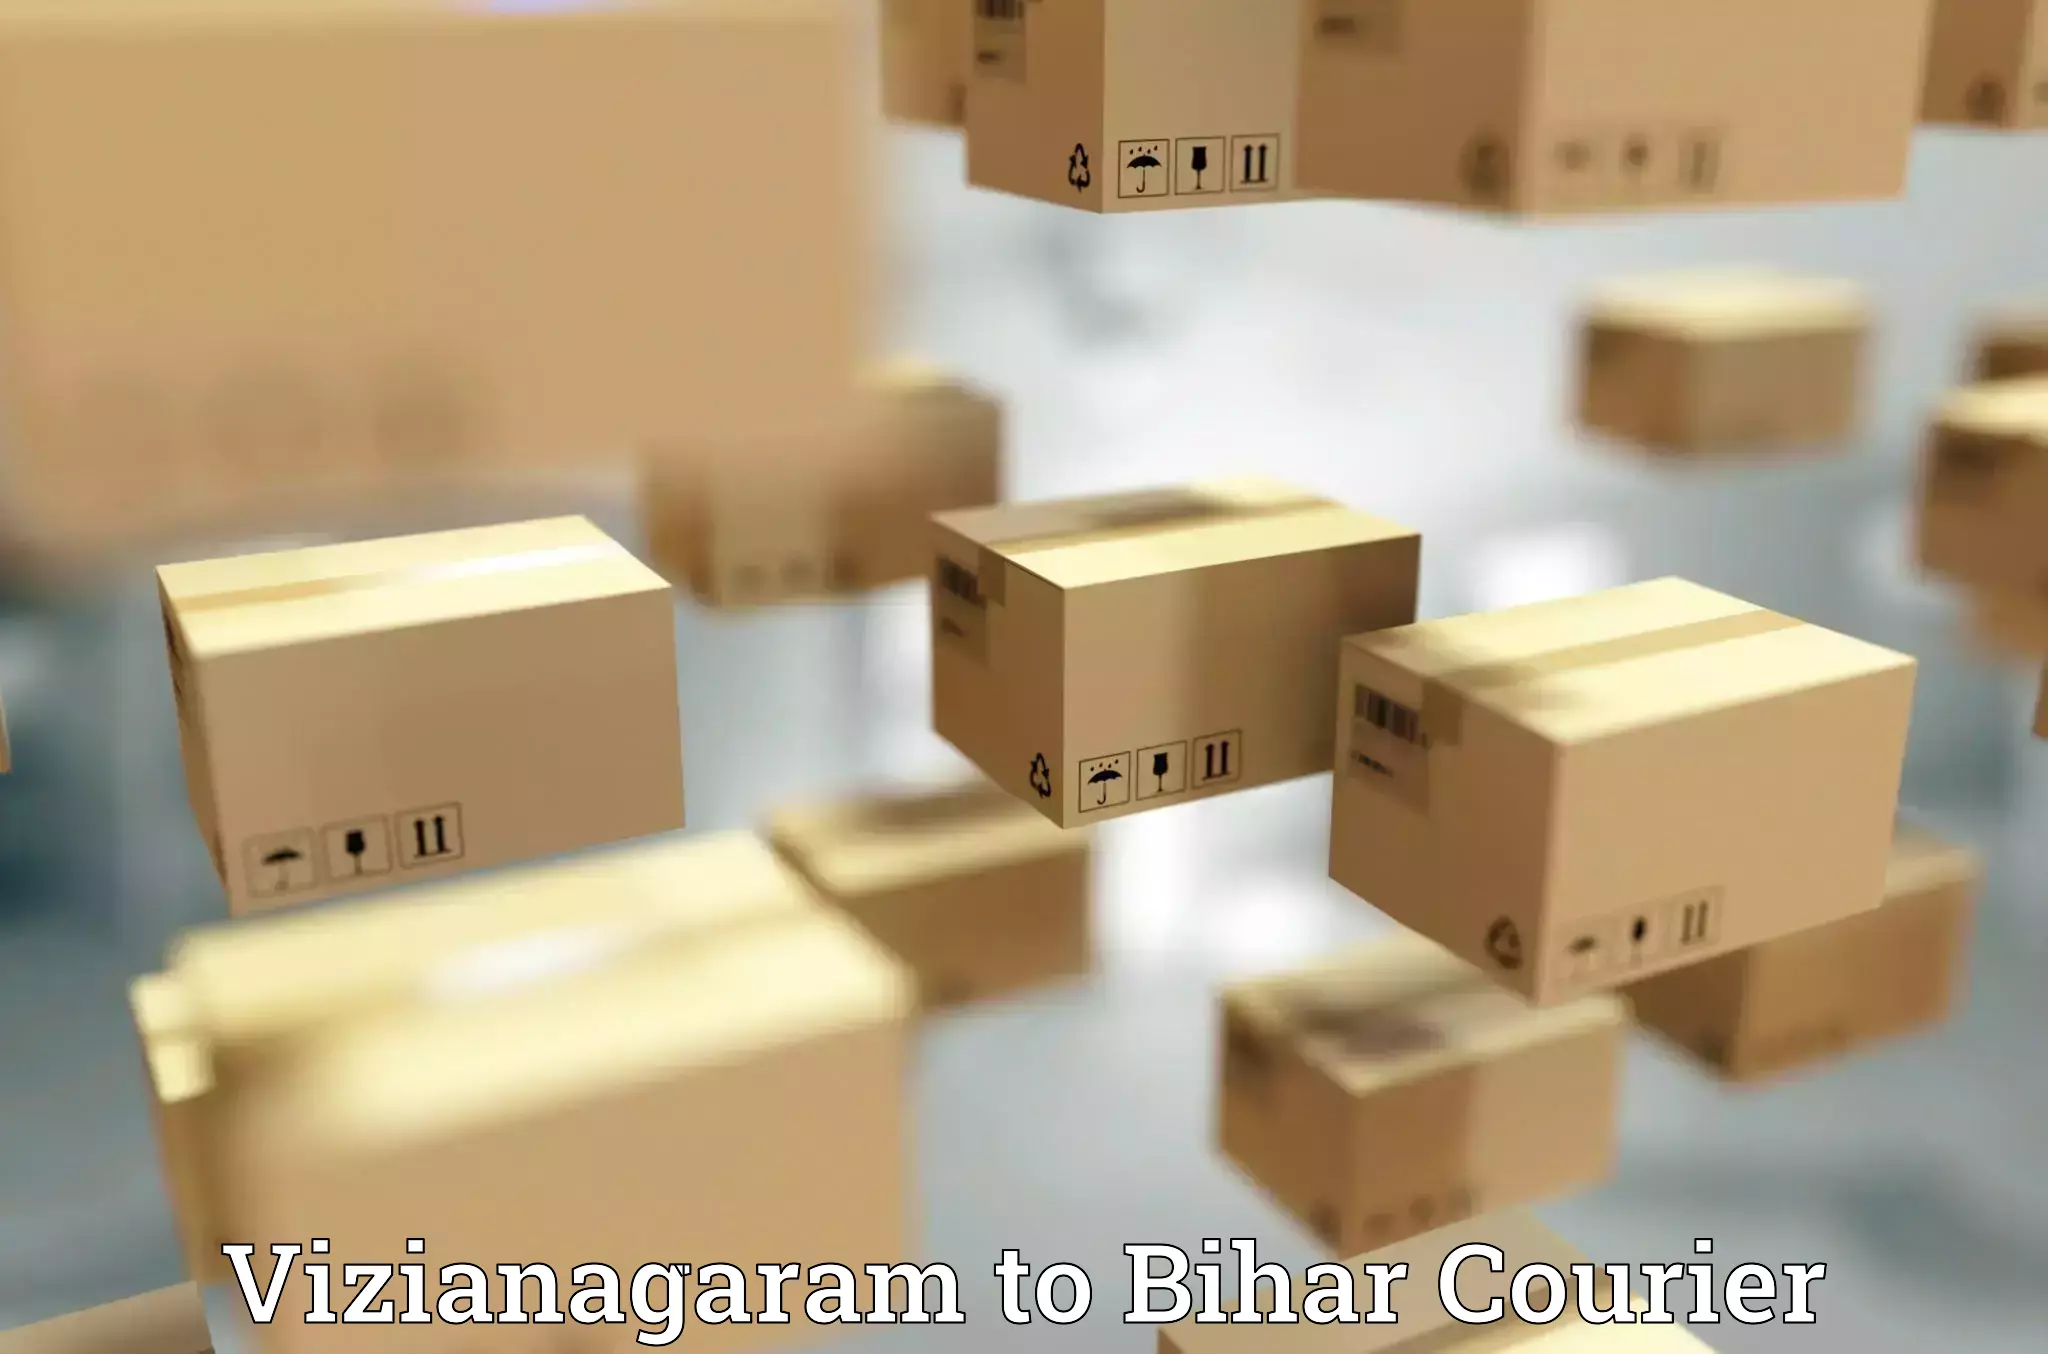 Luggage delivery app Vizianagaram to Bihar